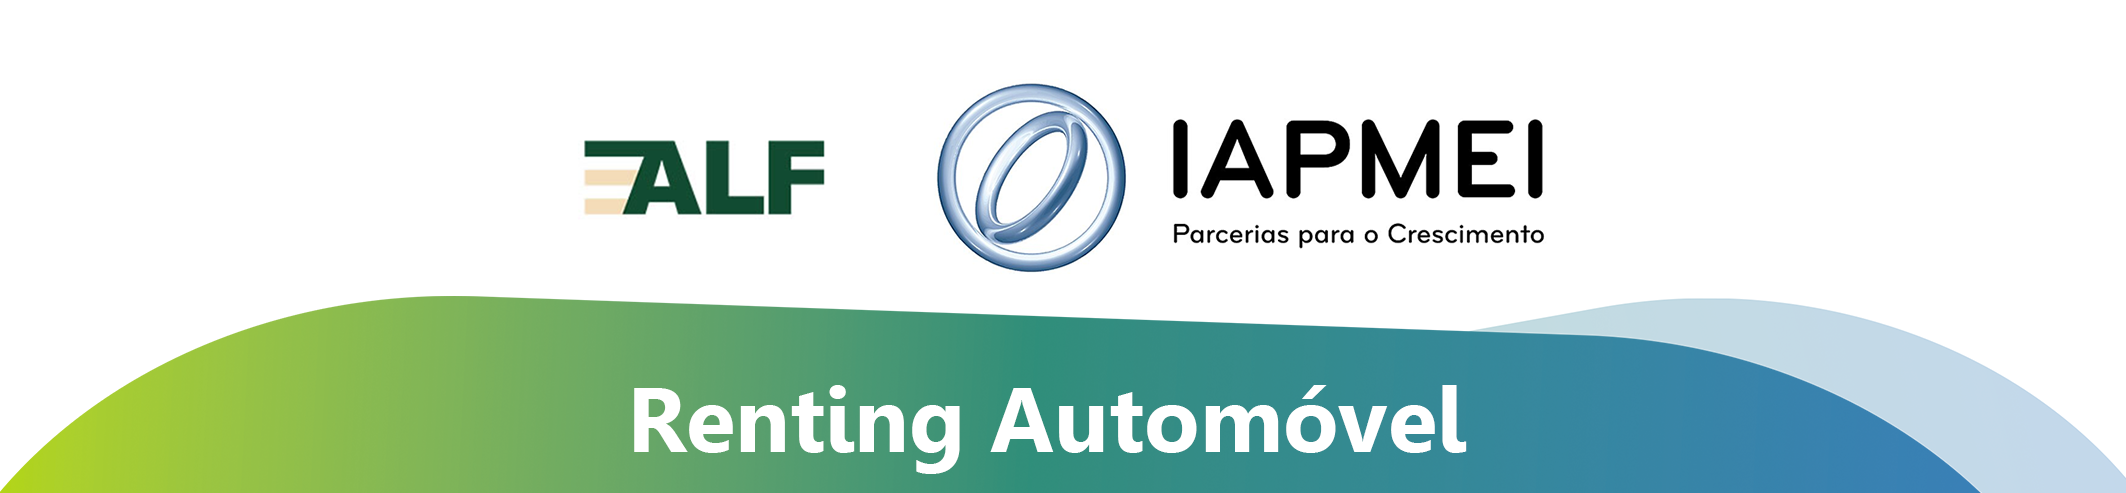 Renting Automóvel - Vídeo promovido pelo IAPMEI na Celebração dos 40 anos da ALF